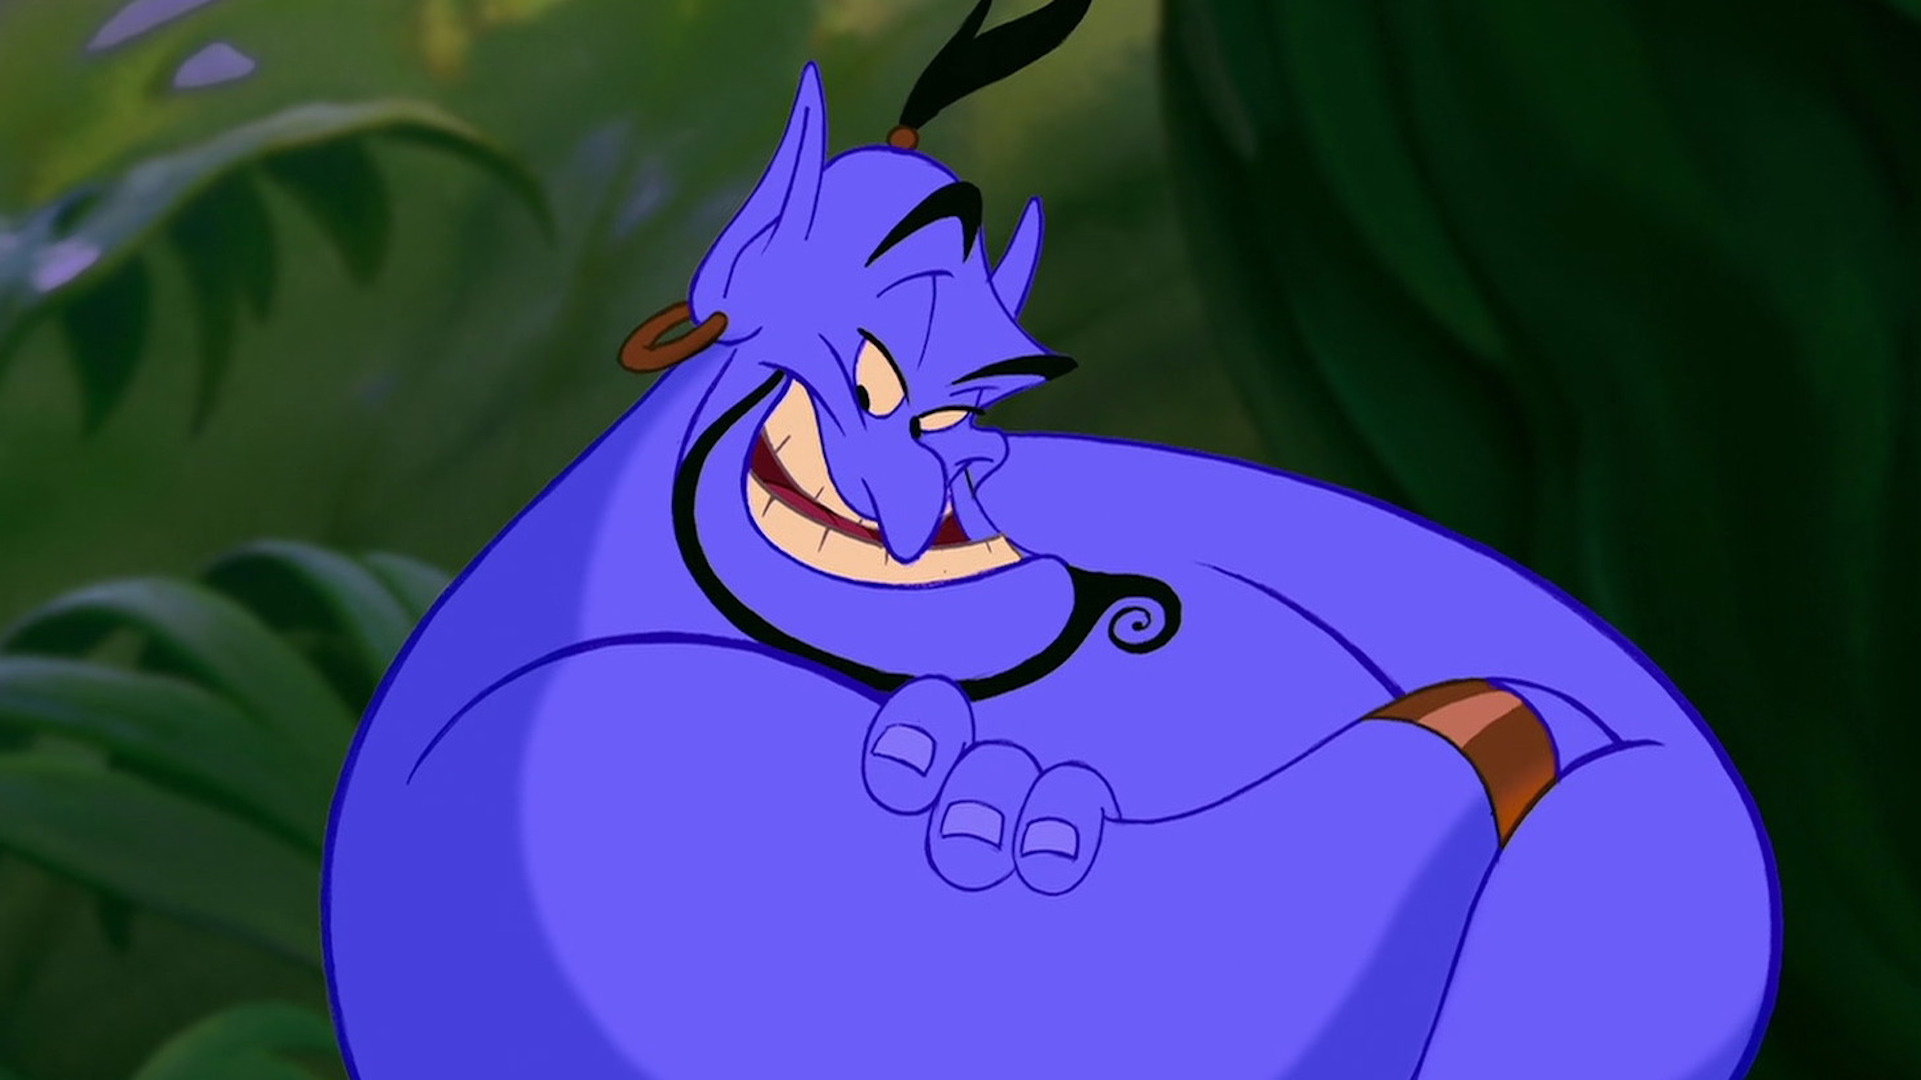 The genie in the original version of Aladdin